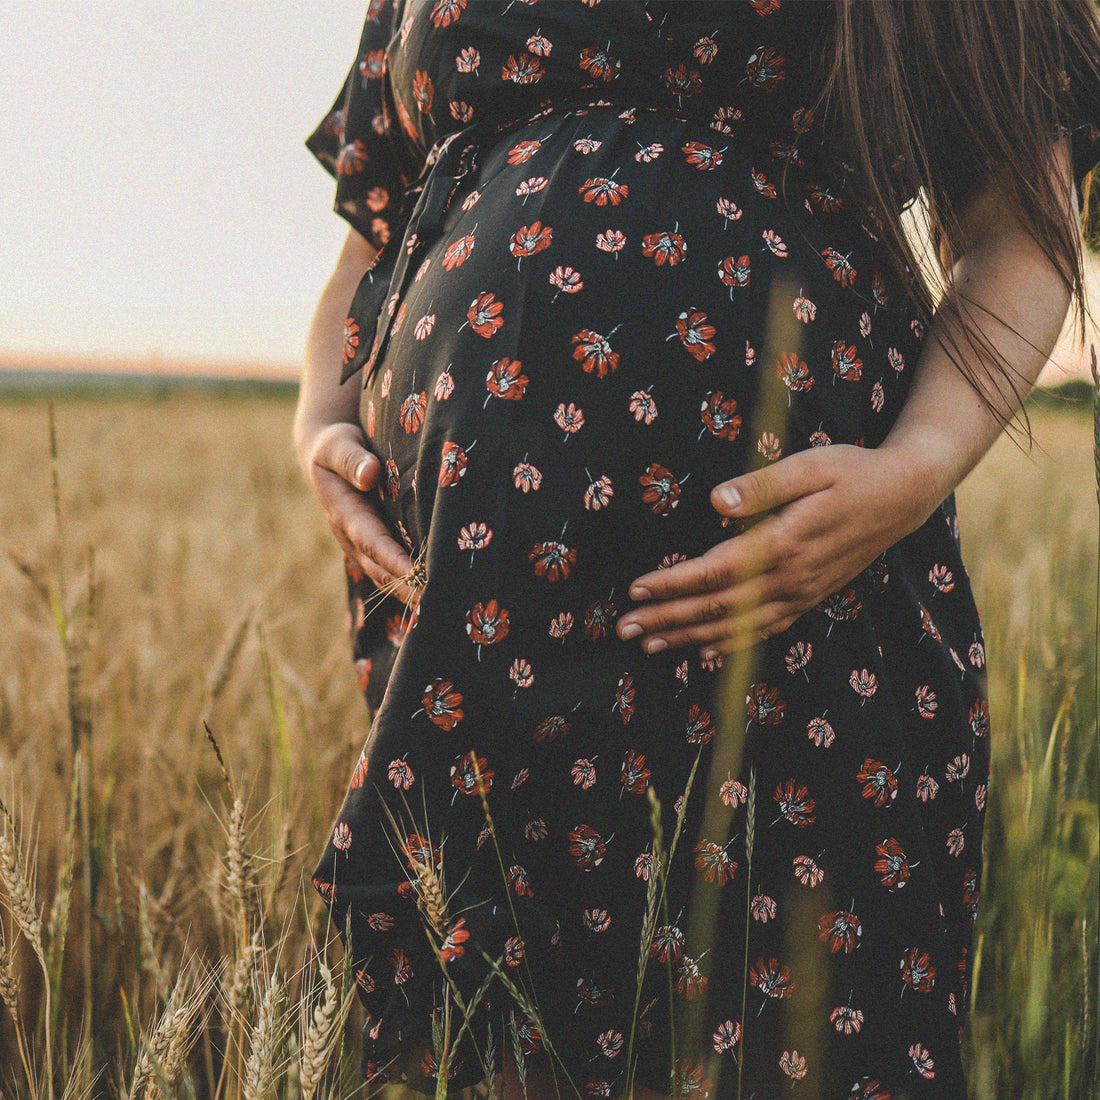 Femme enceinte dans un champ de blé